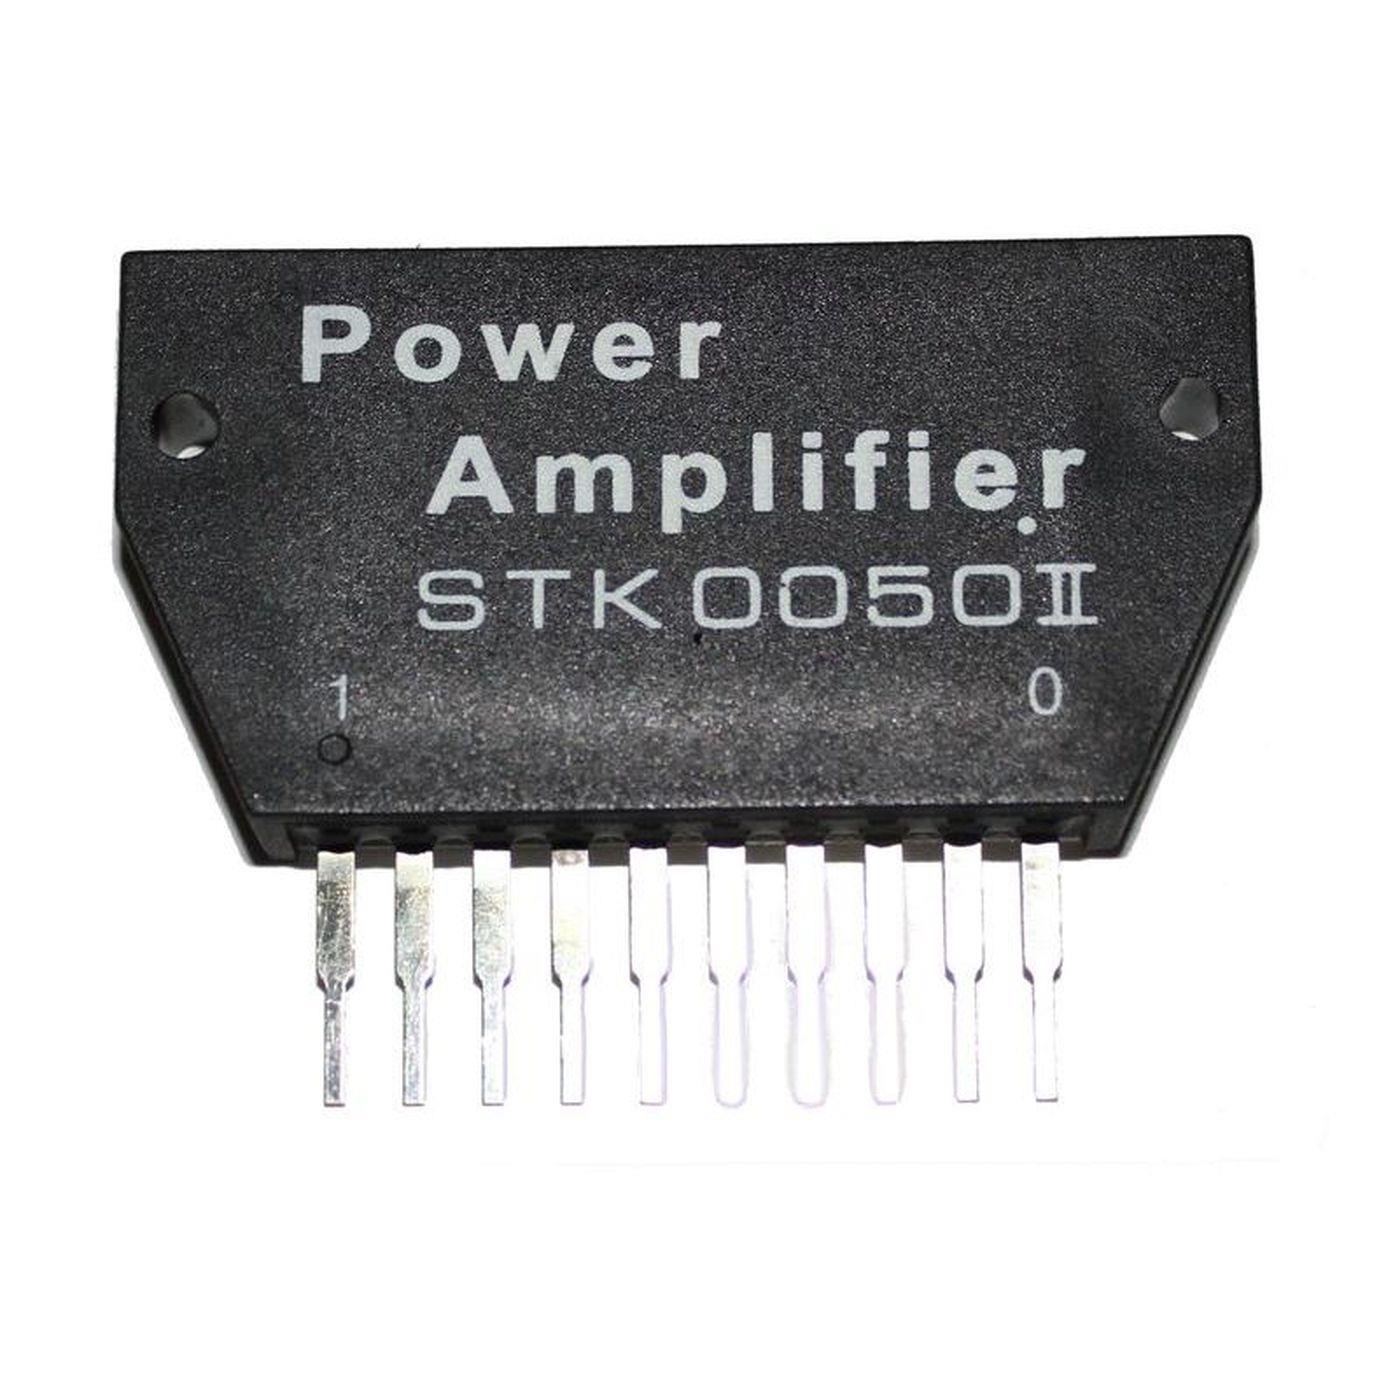 Hybrid IC STK0050II 60x30mm Power amplifier